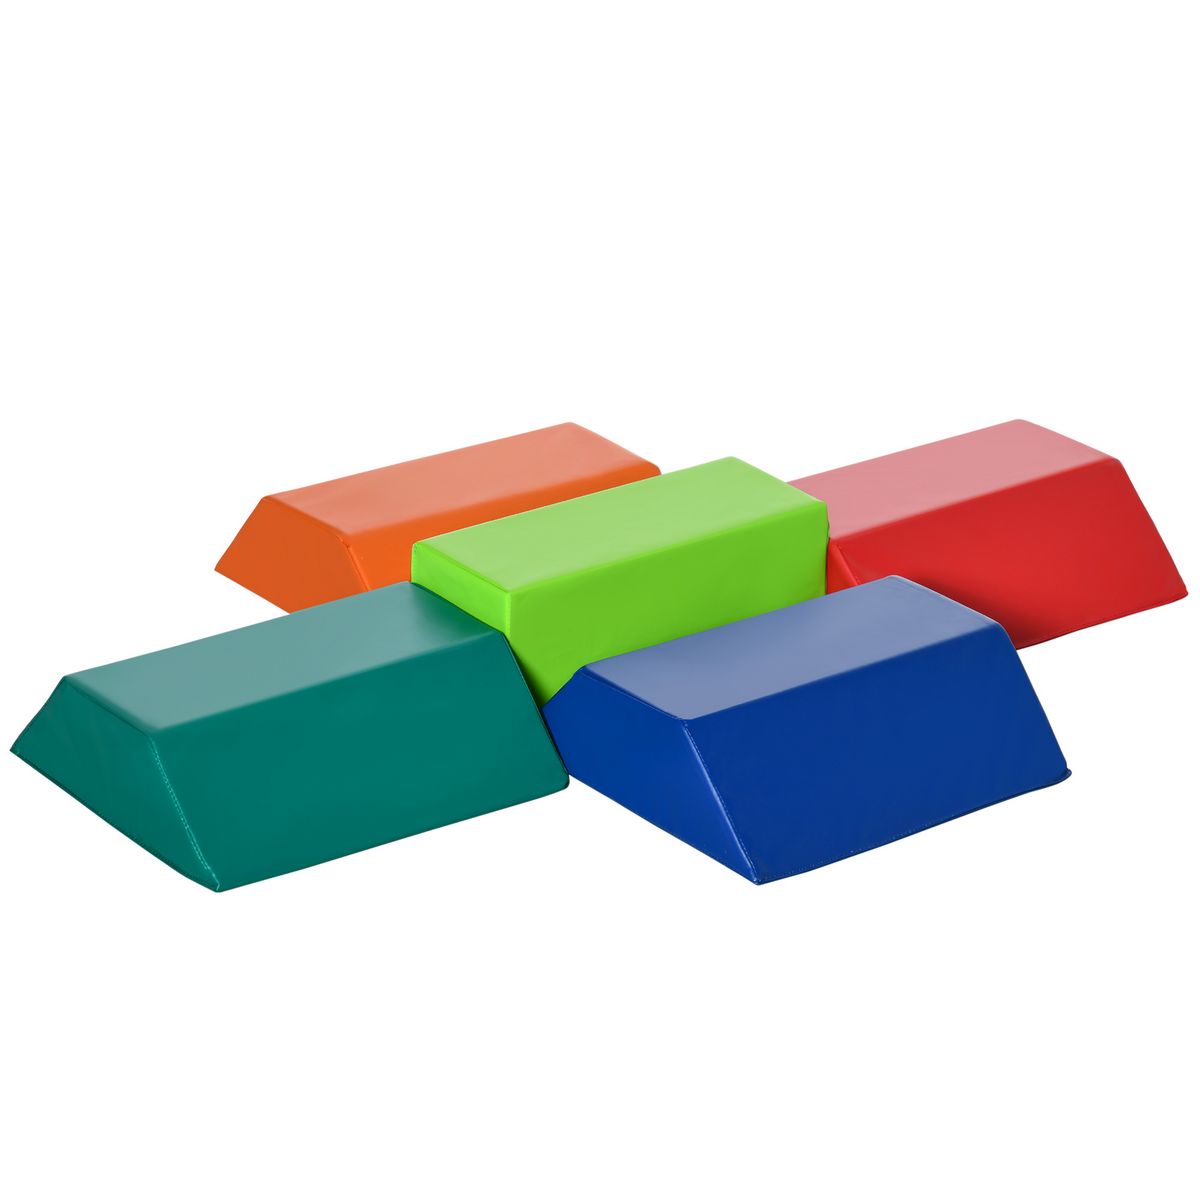 HOMCOM 5 blocs de construction en mousse XL - modules de motricité - jouets éducatifs - certifiés normes EN71-1-2-3 - mousse EPE revêtement PU quadricolore